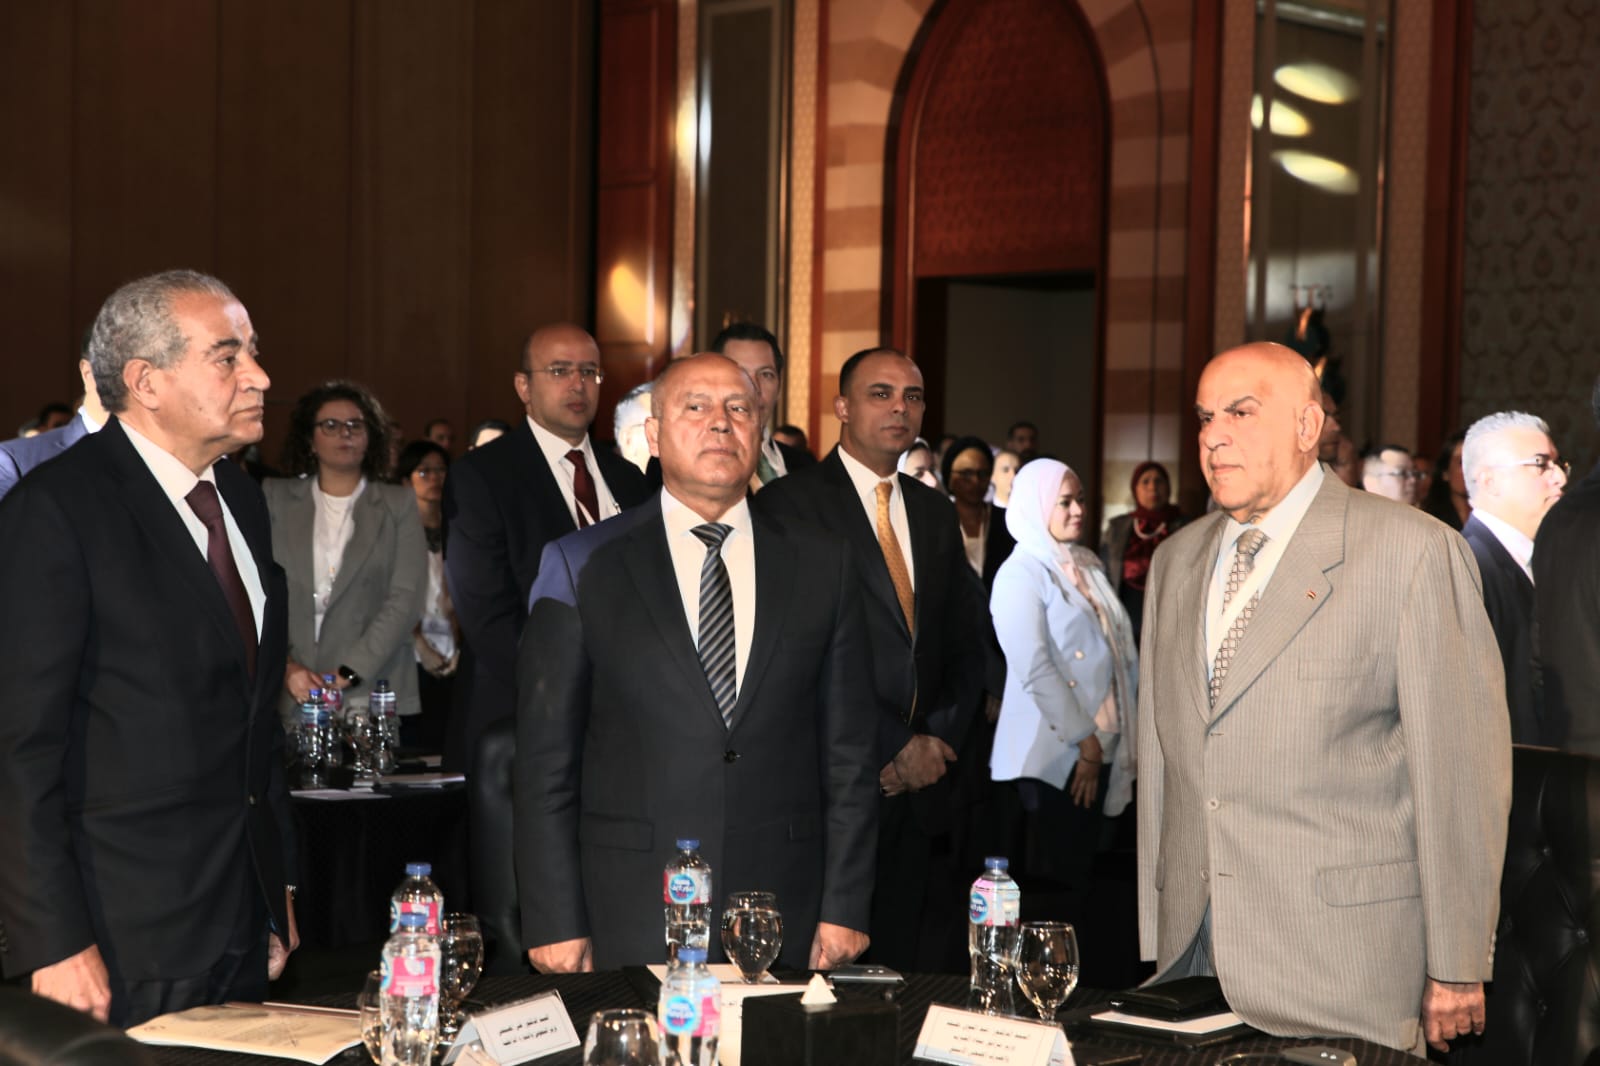 الملتقى الدولى لتحقيق الاستدامة بنظام المشاركة مع القطاع الخاص بالشرق الأوسط وشمال إفريقيا